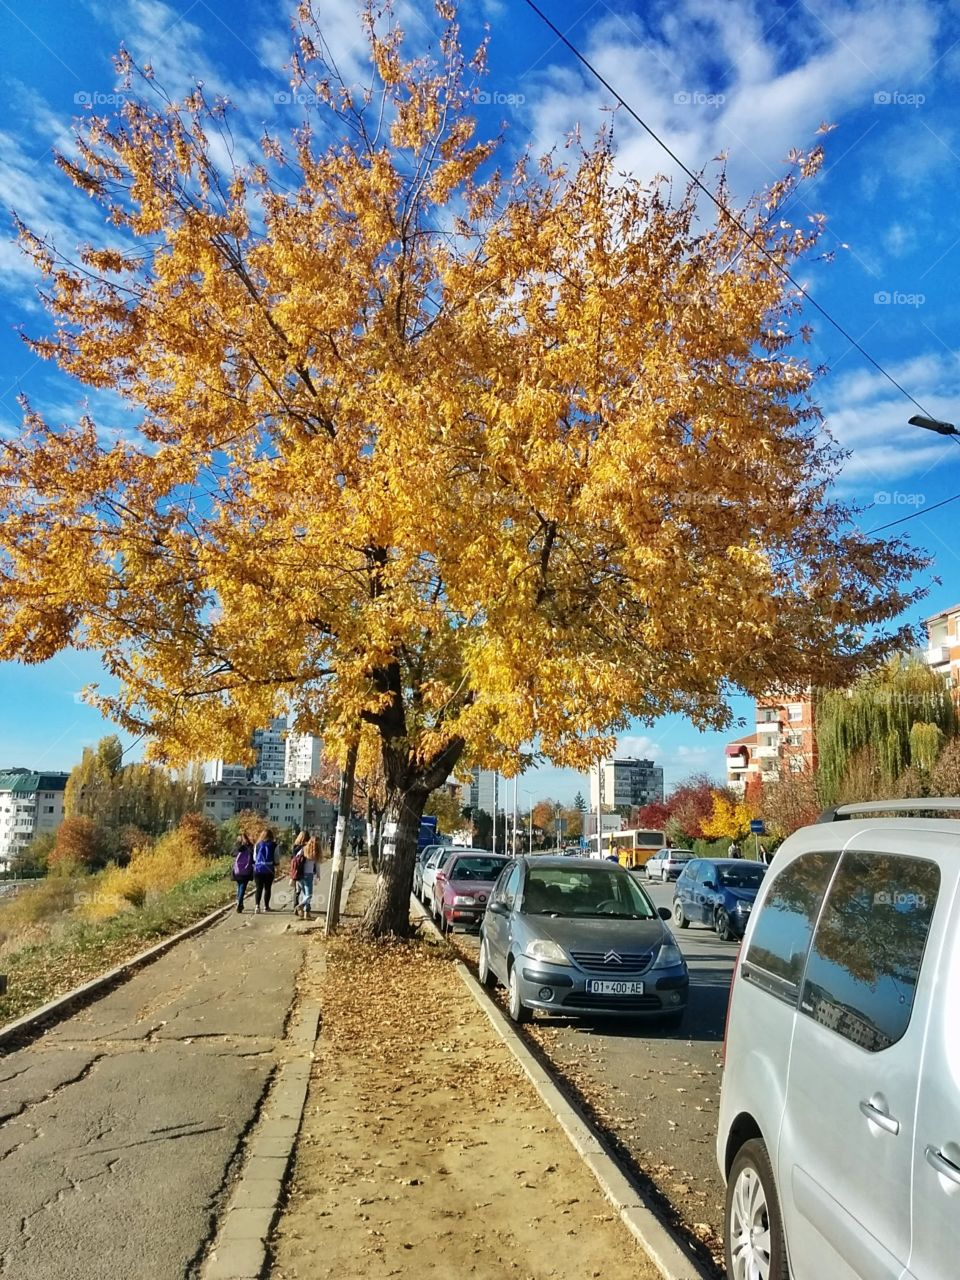 Autumn in Pristina, Kosovo